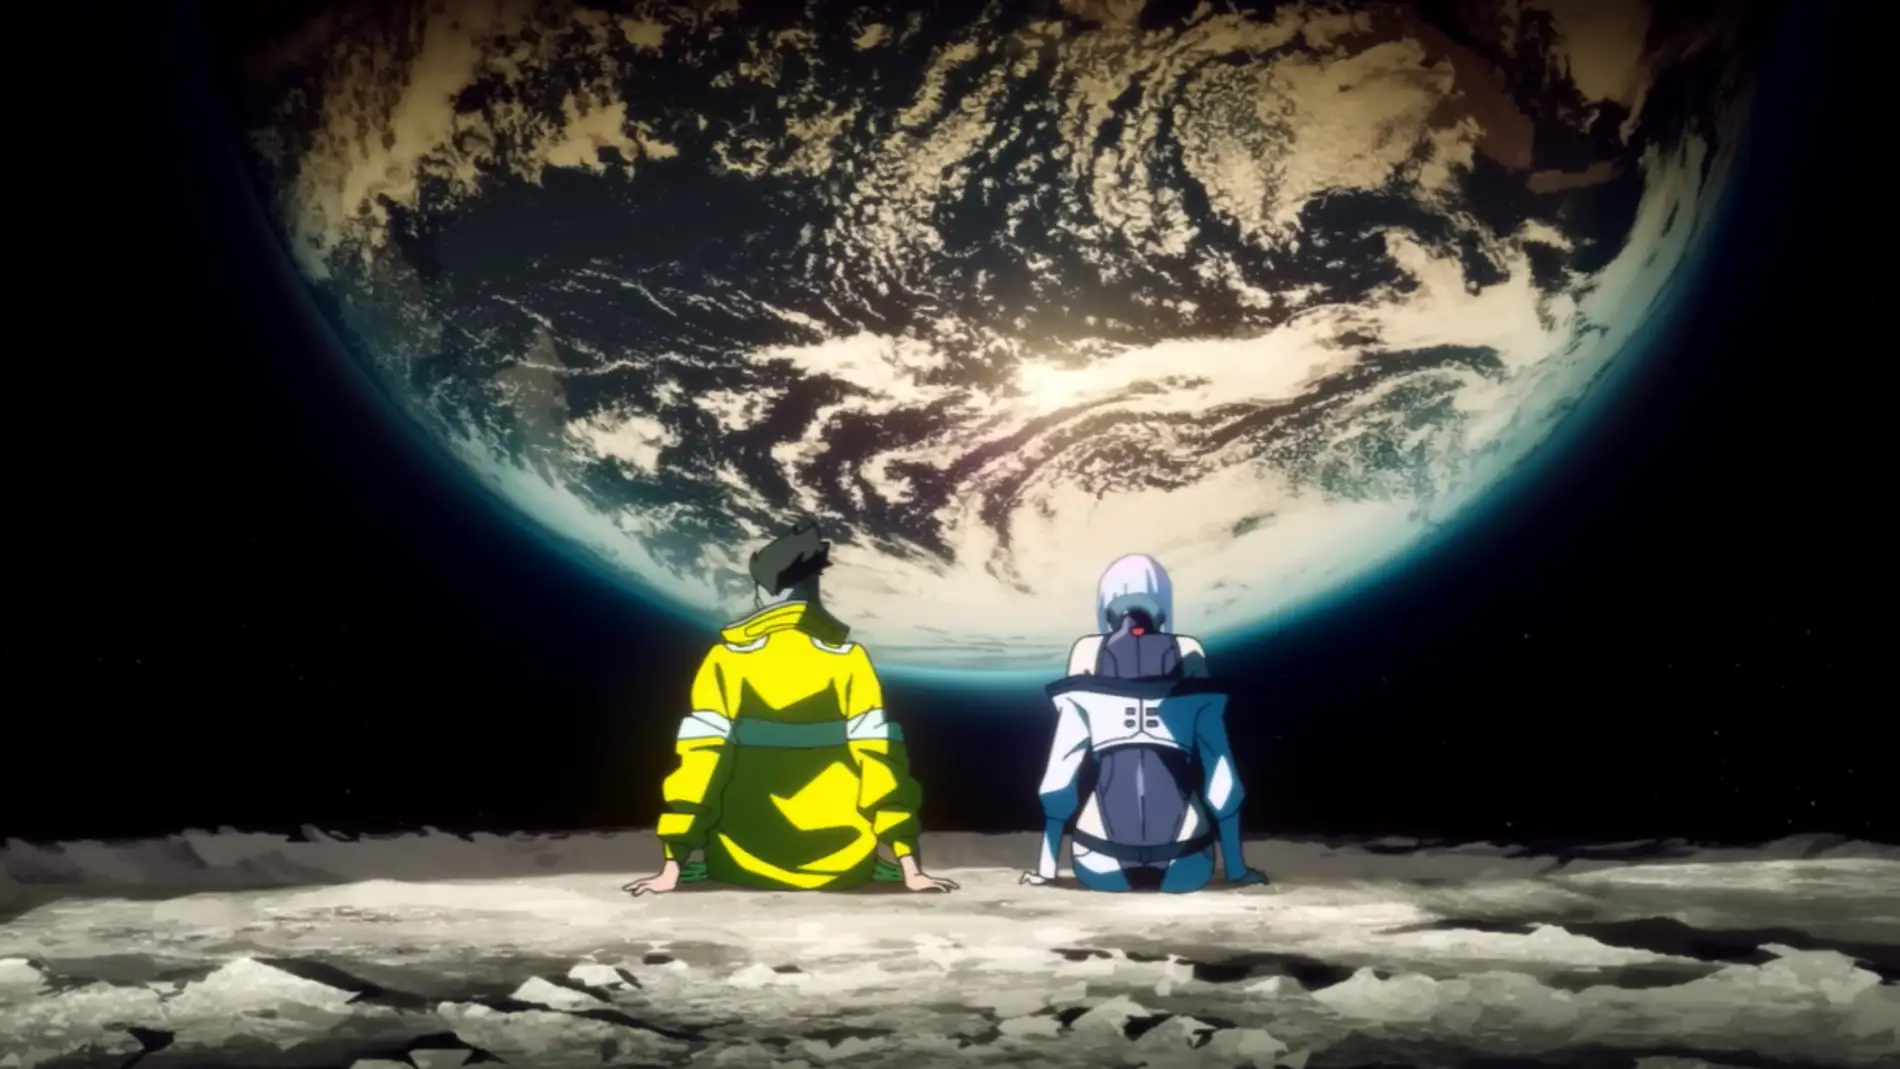 Crunchyroll anunció a los animes de la temporada Verano 2022 que llegarán  a su plataforma